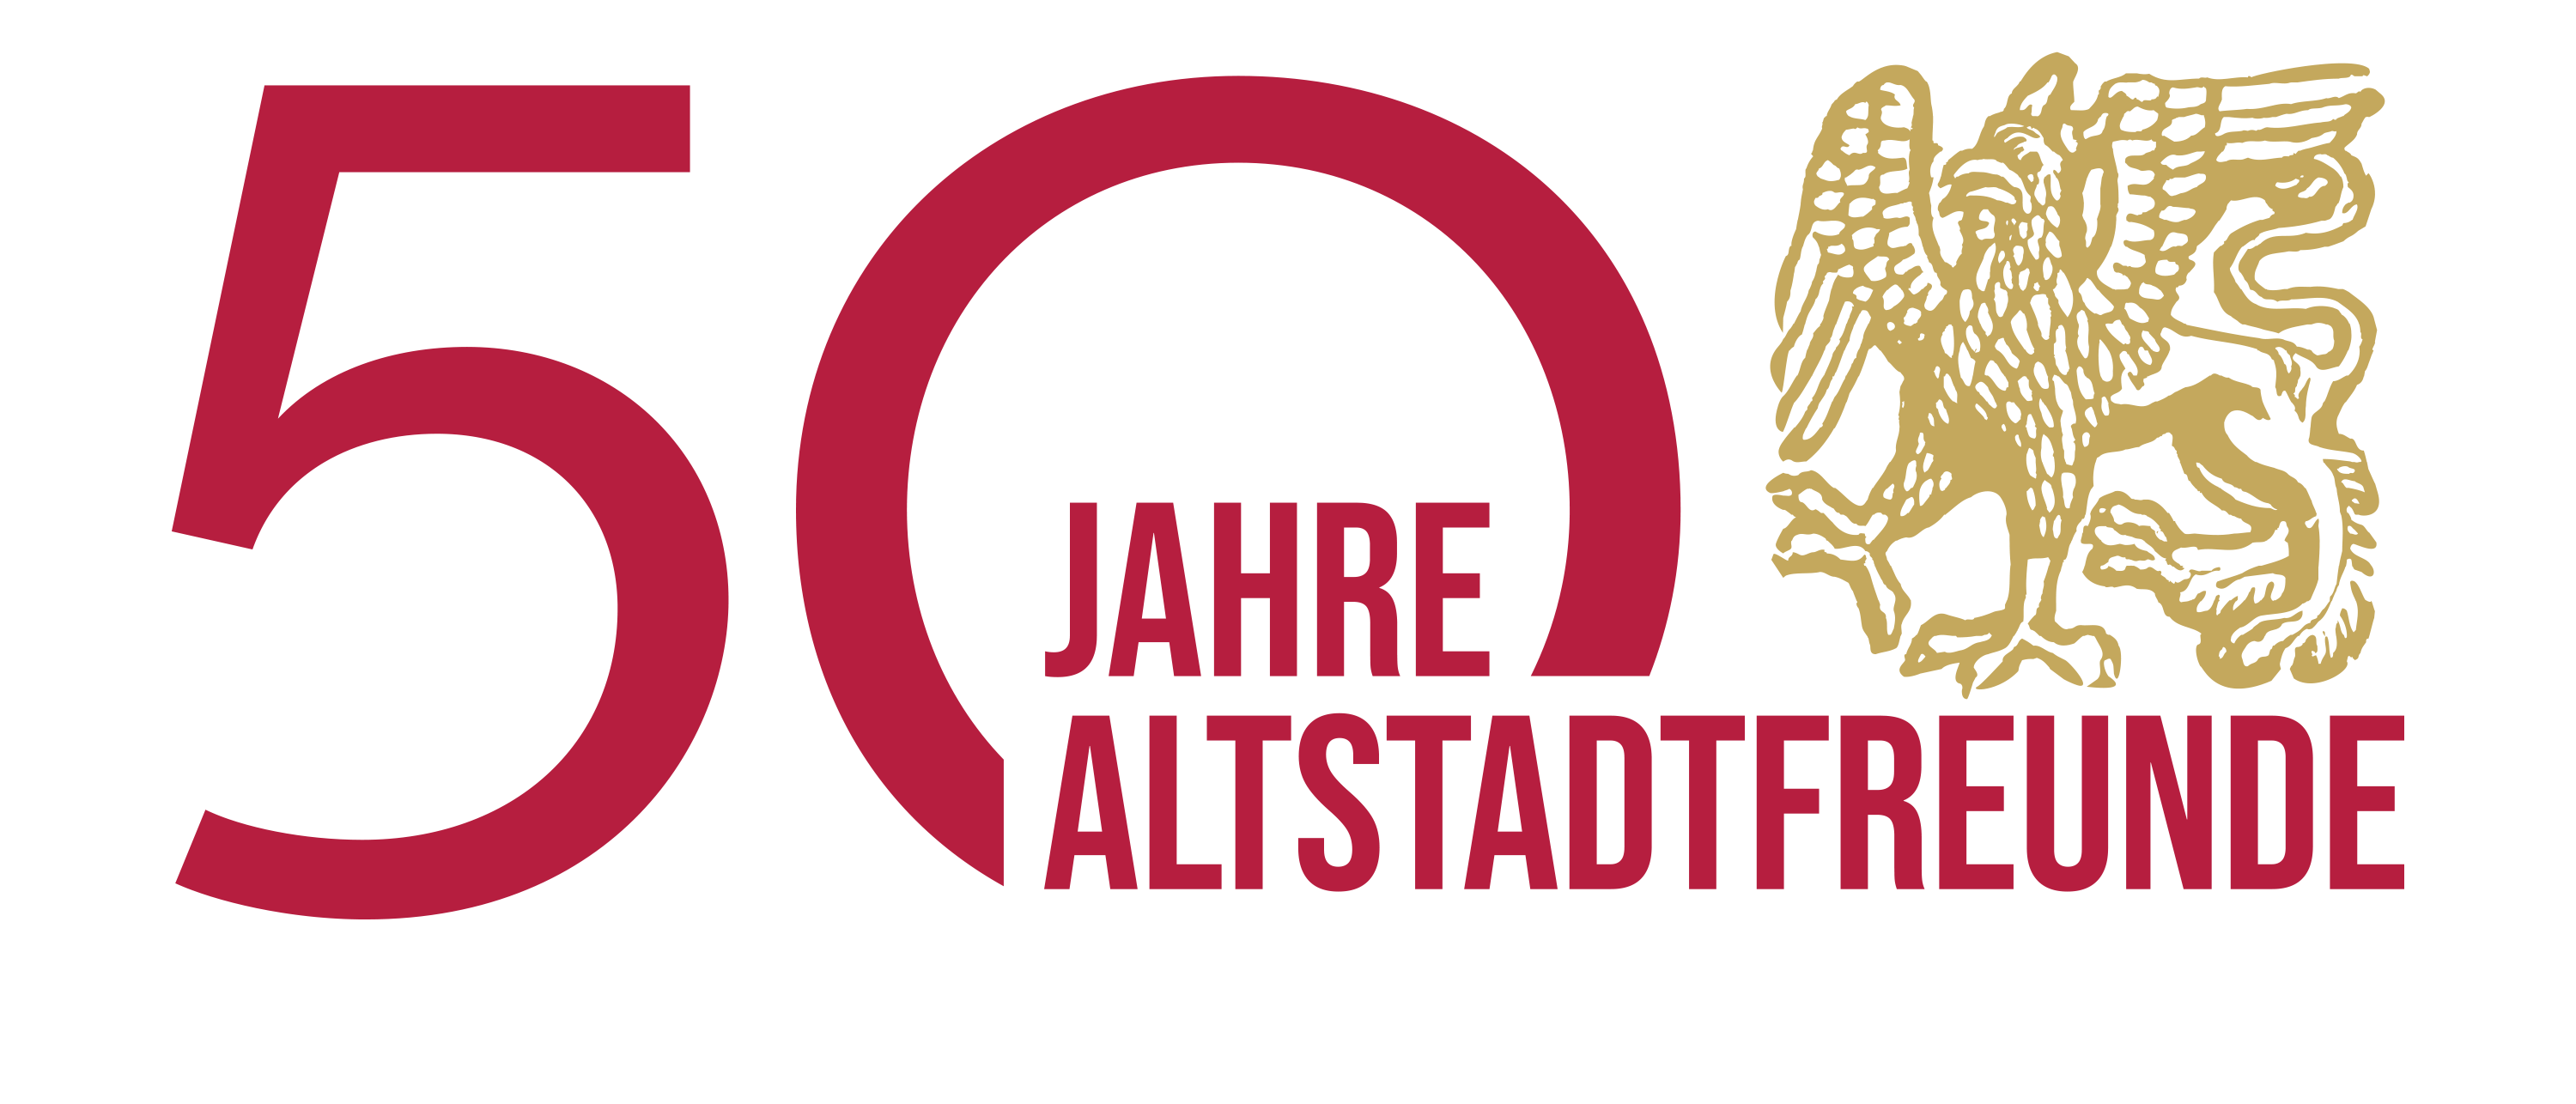 50 Jahre Altstadtfreunde Nürnberg e.V.